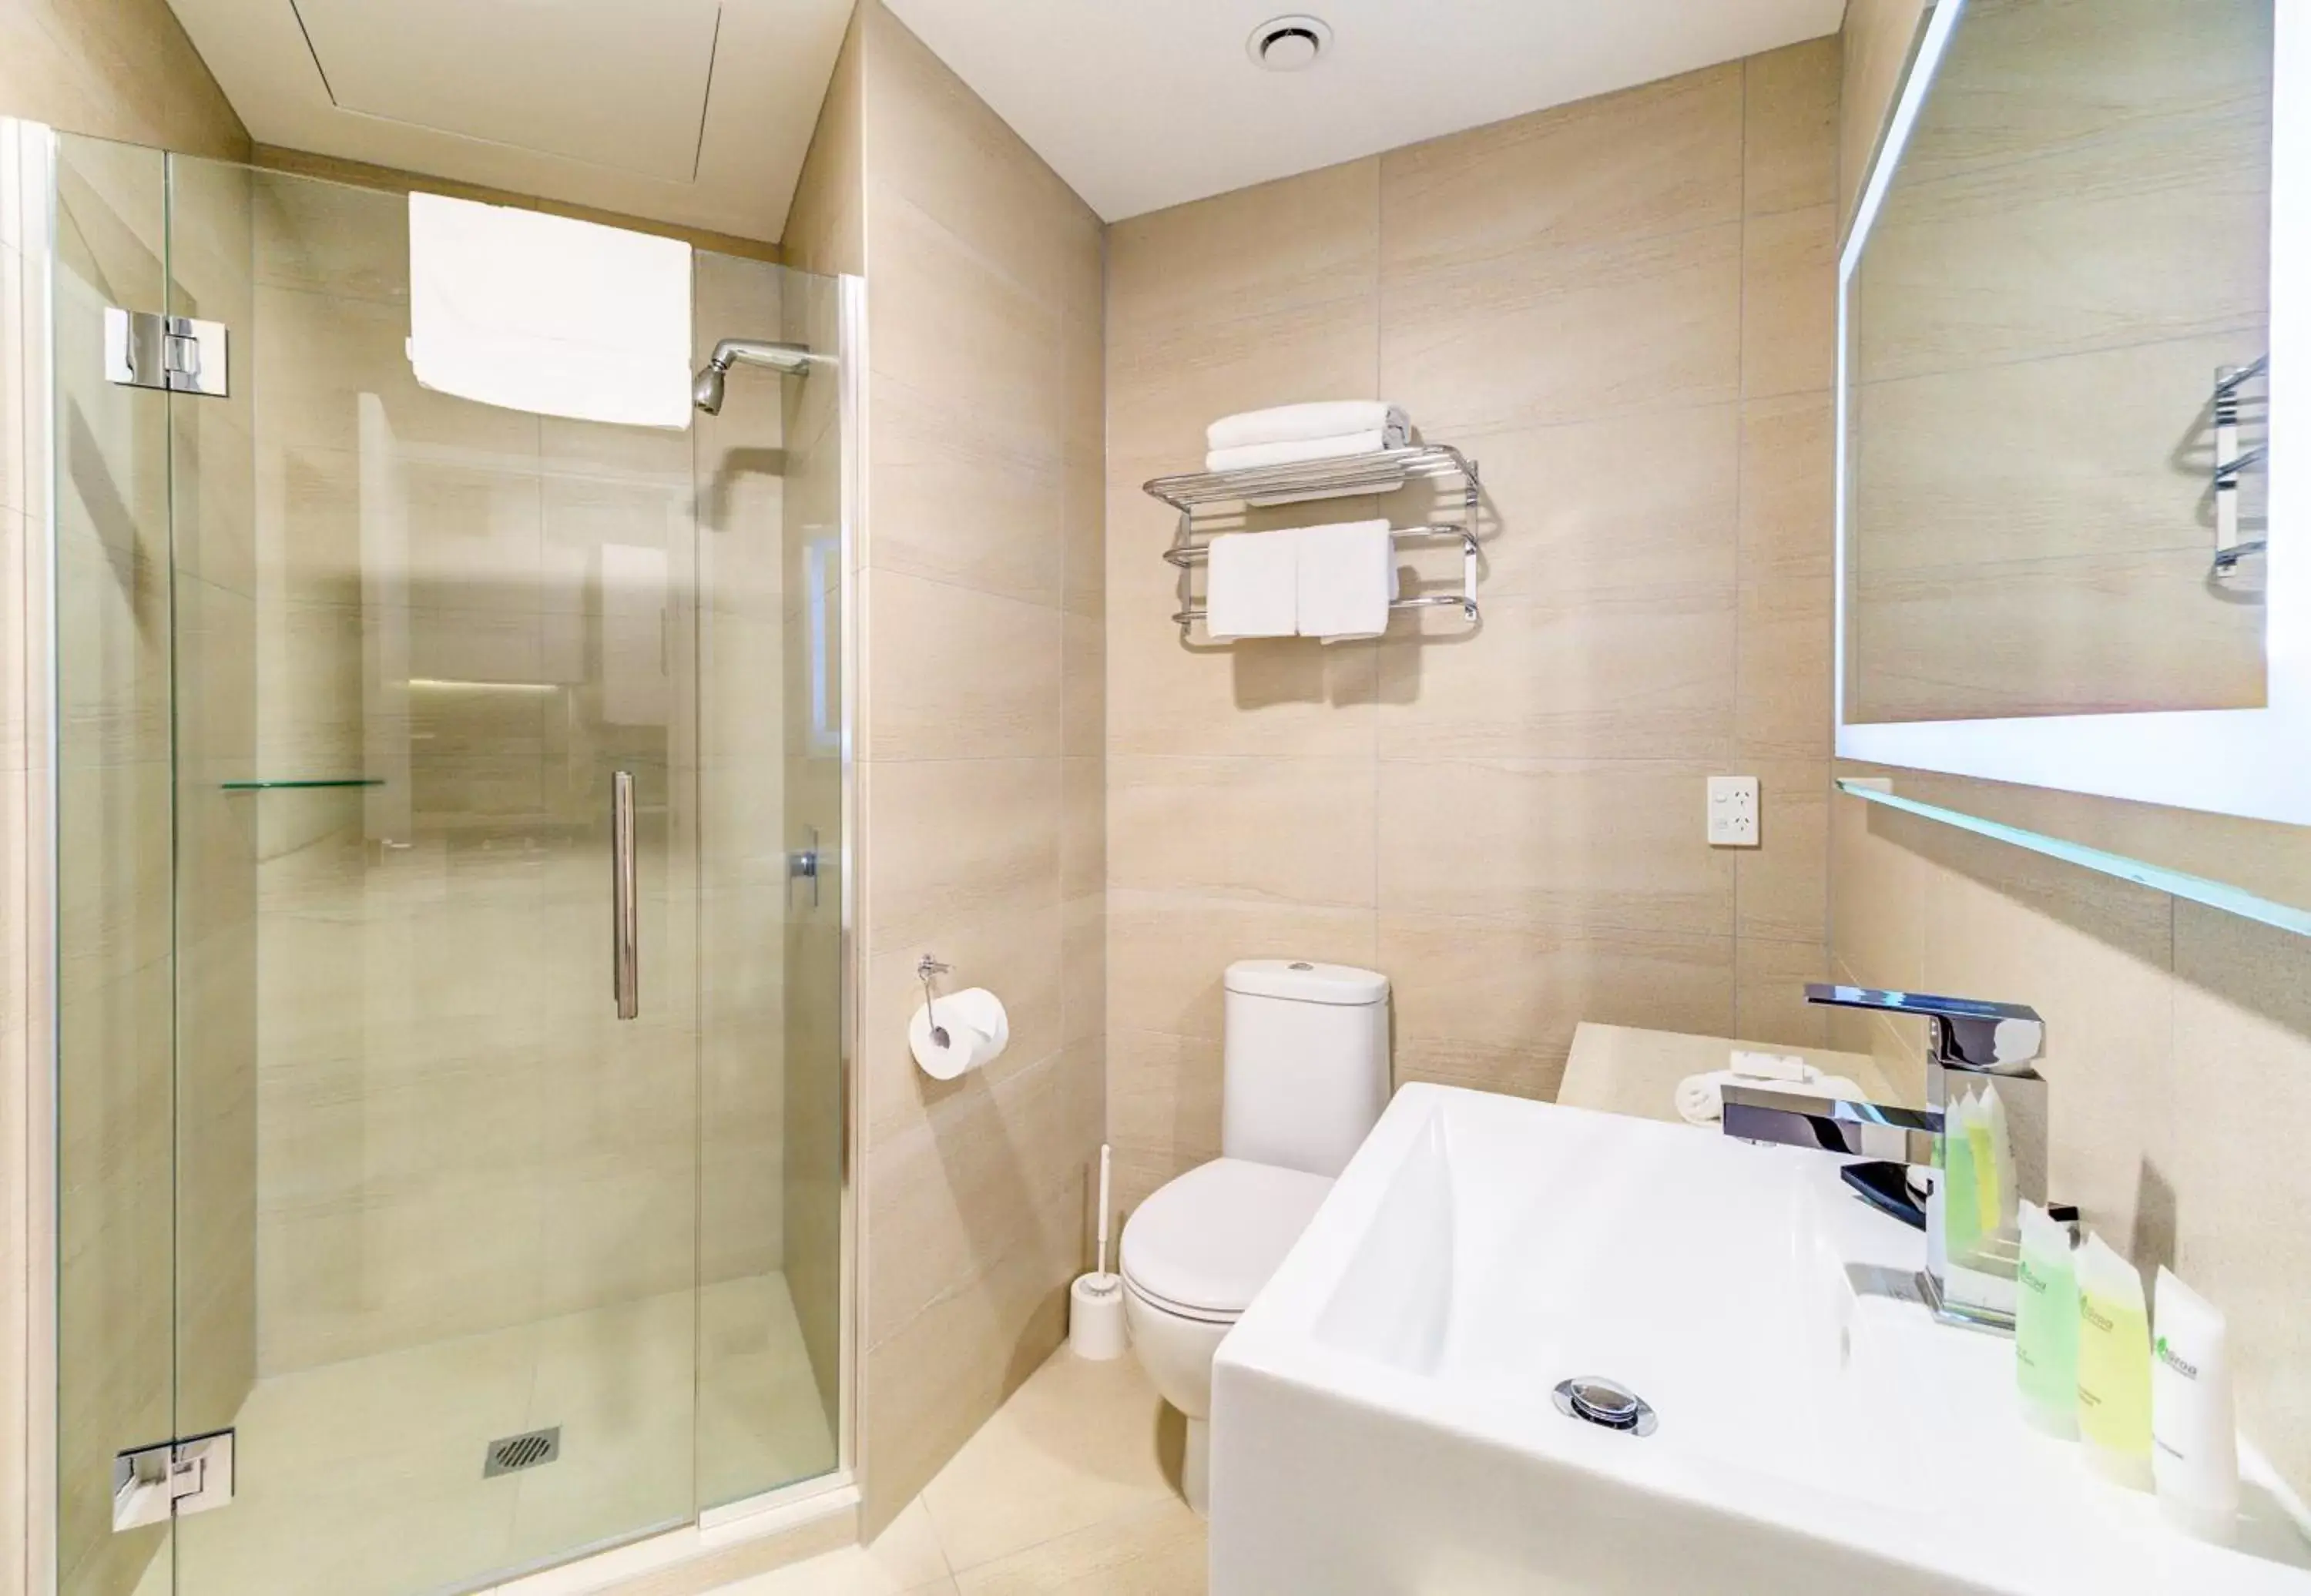 Shower, Bathroom in VR Queen Street Hotel & Suites